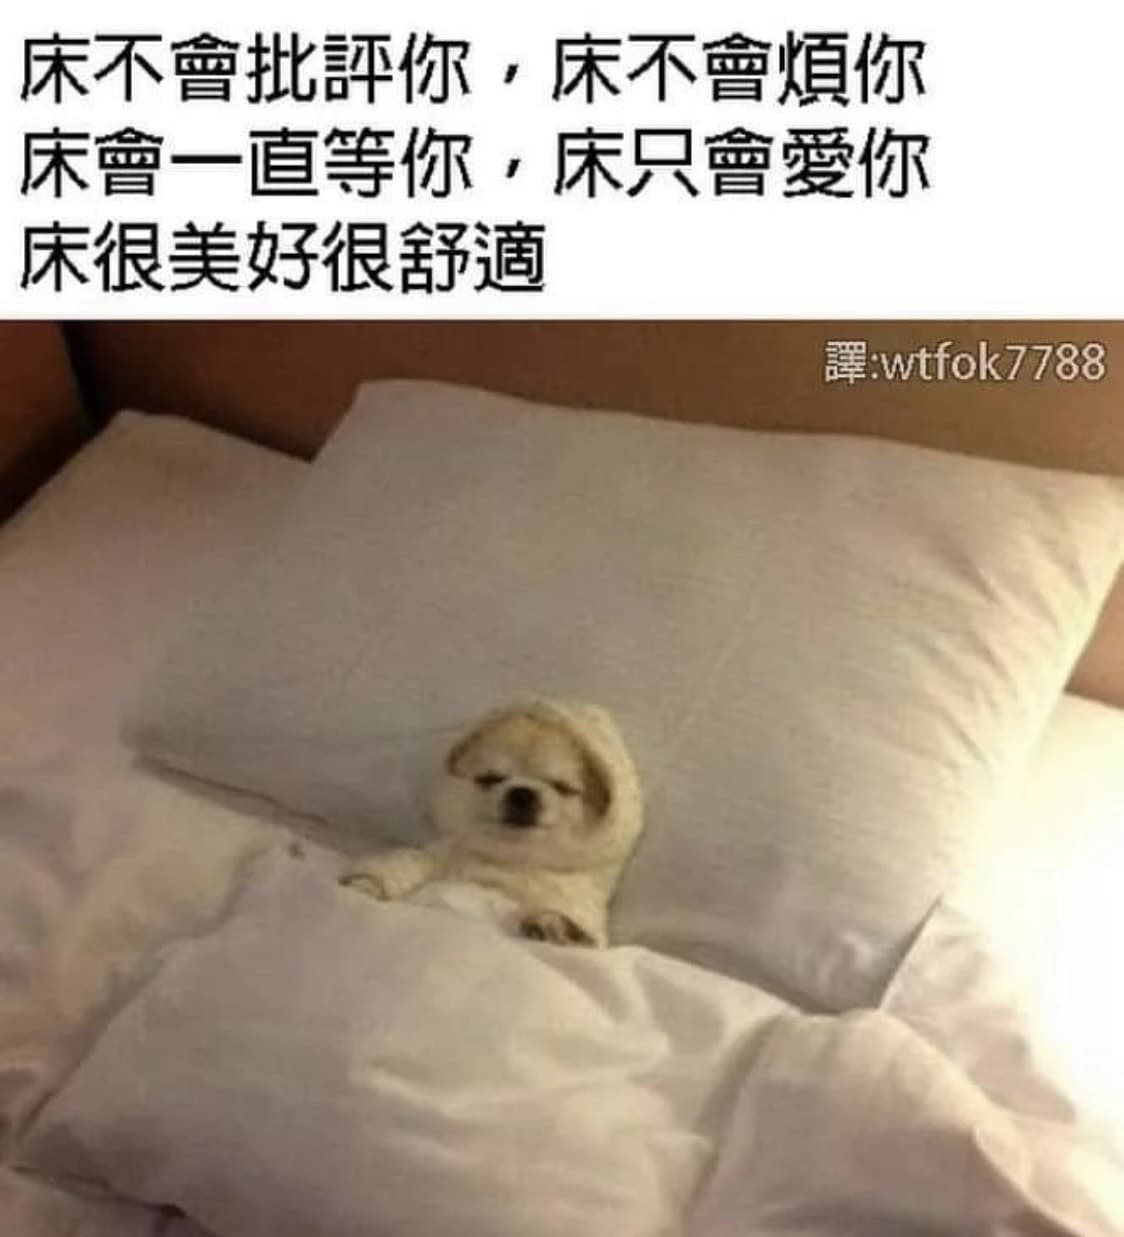 想你，亲爱的床。 - 斗图大会 - 蘑菇头、床表情库 - 真正的斗图网站 - dou.yuanmazg.com